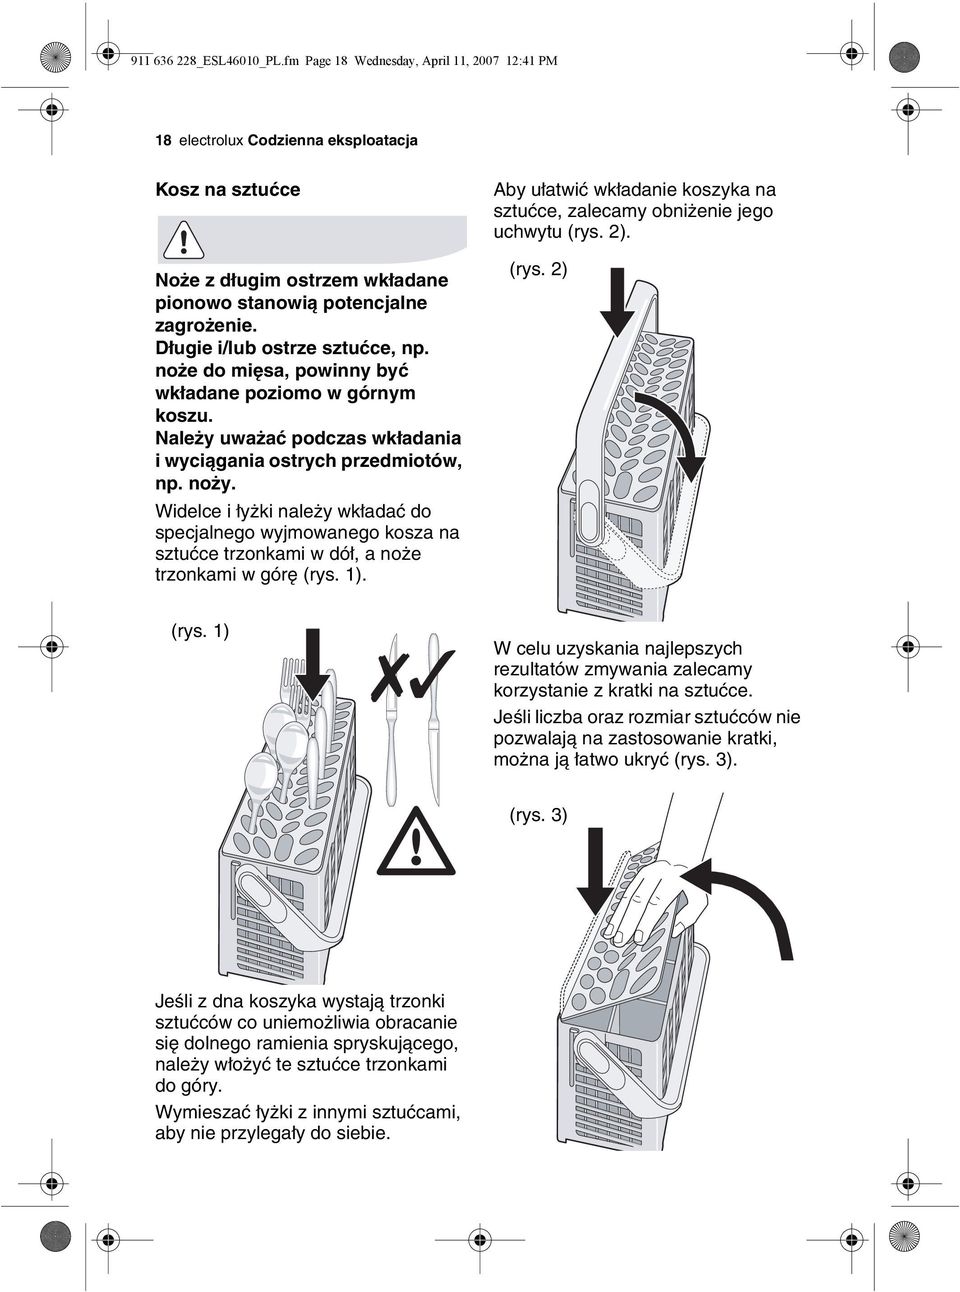 Widelce i łyżki należy wkładać do specjalnego wyjmowanego kosza na sztućce trzonkami w dół, a noże trzonkami w górę (rys. 1).